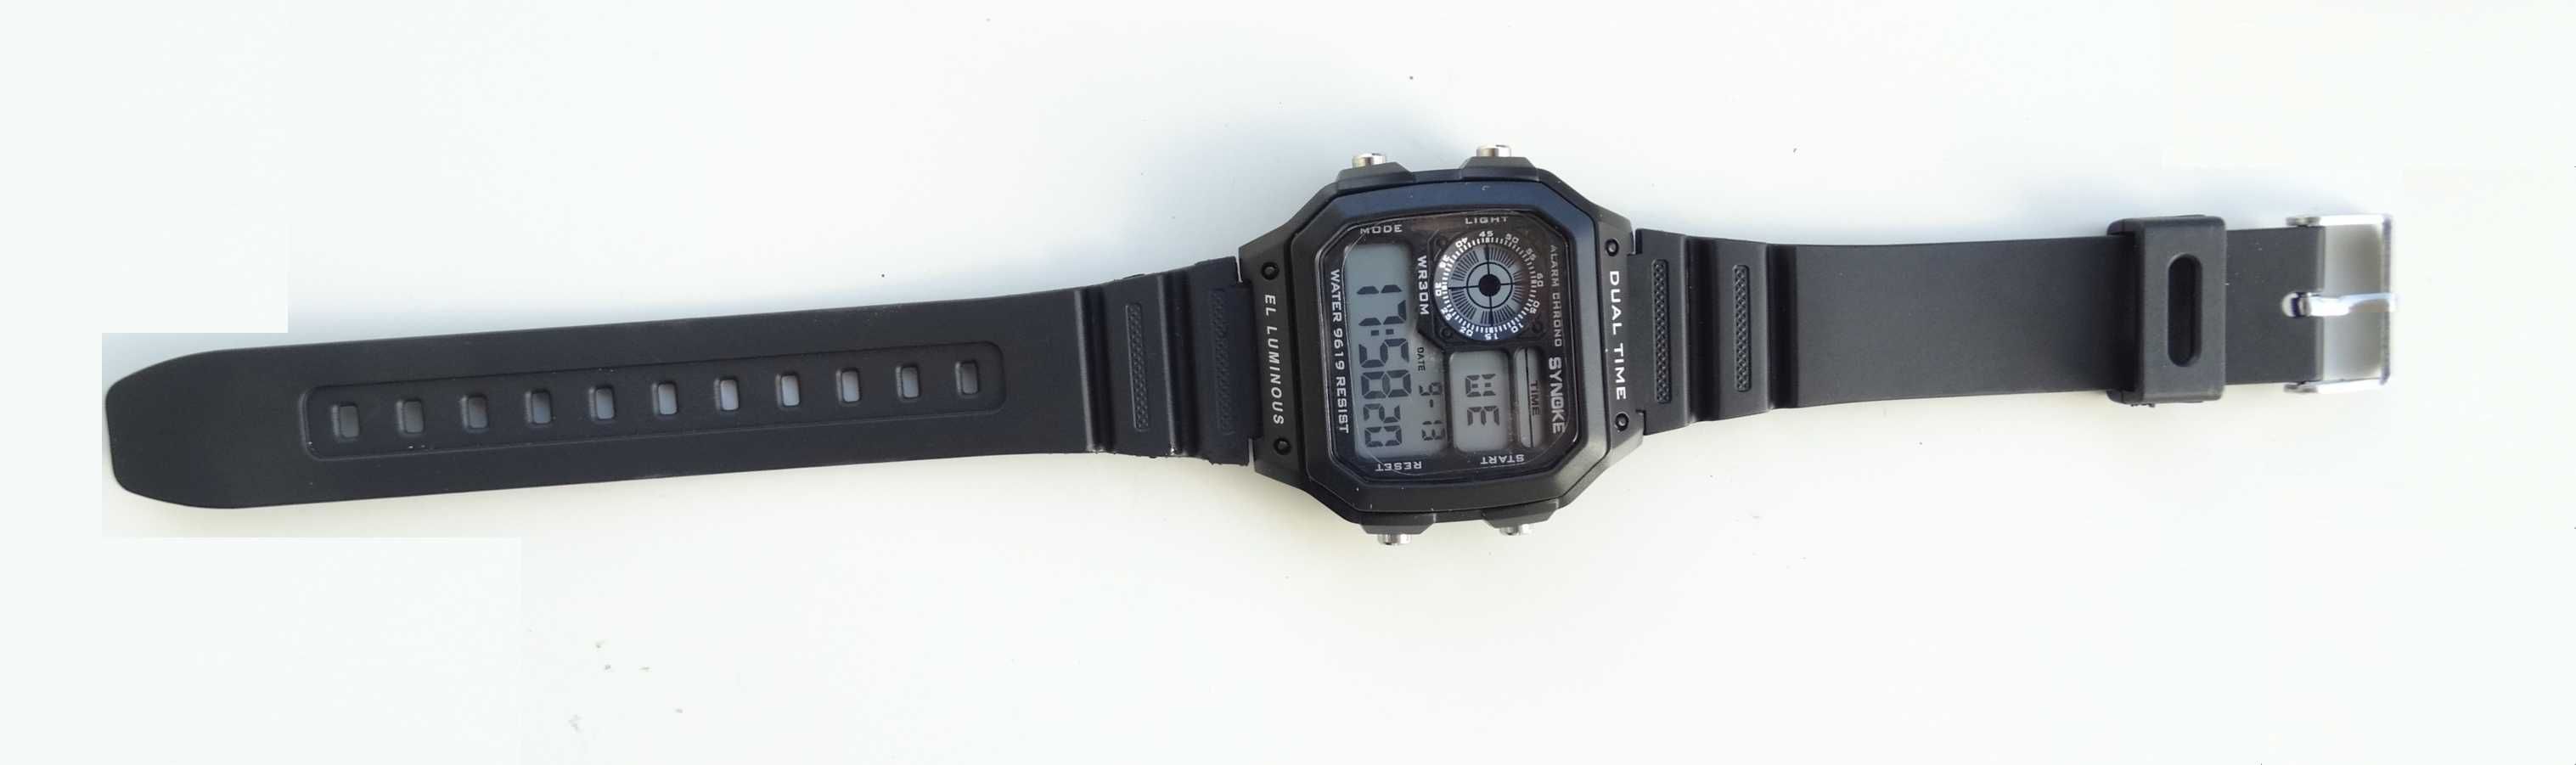 Sportowy cyfrowy zegarek elektroniczny Synoke podświetlana tarcza